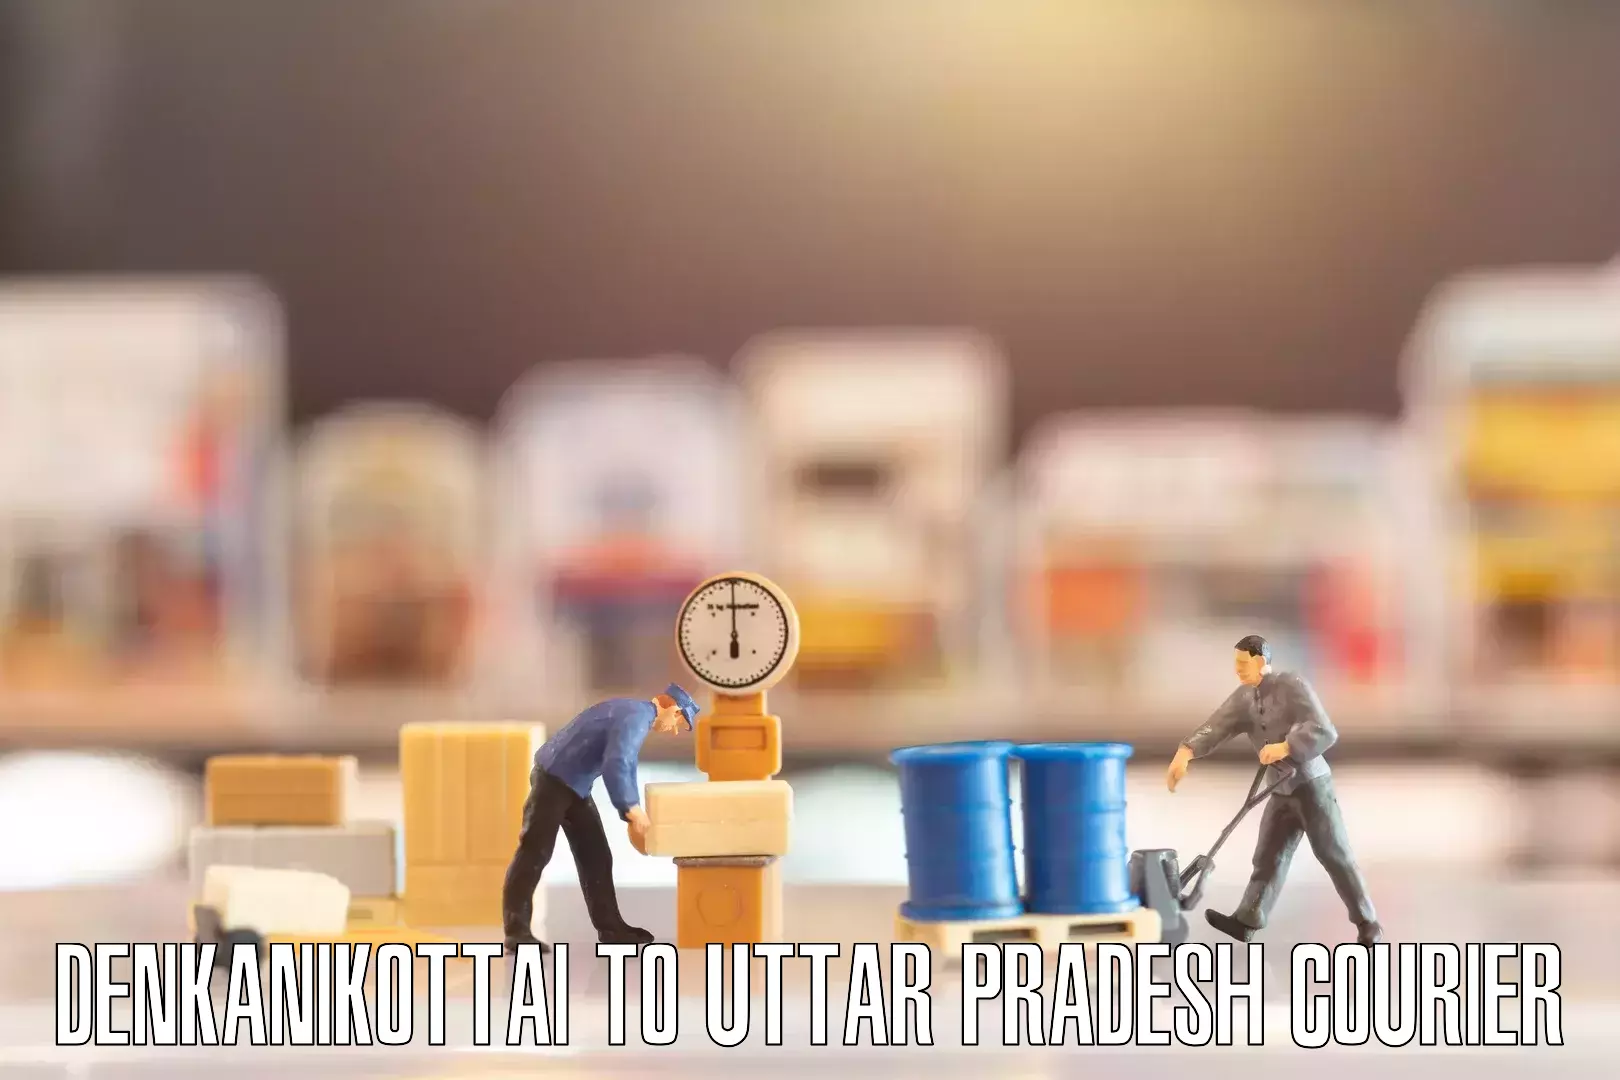 Efficient packing and moving Denkanikottai to Uttar Pradesh